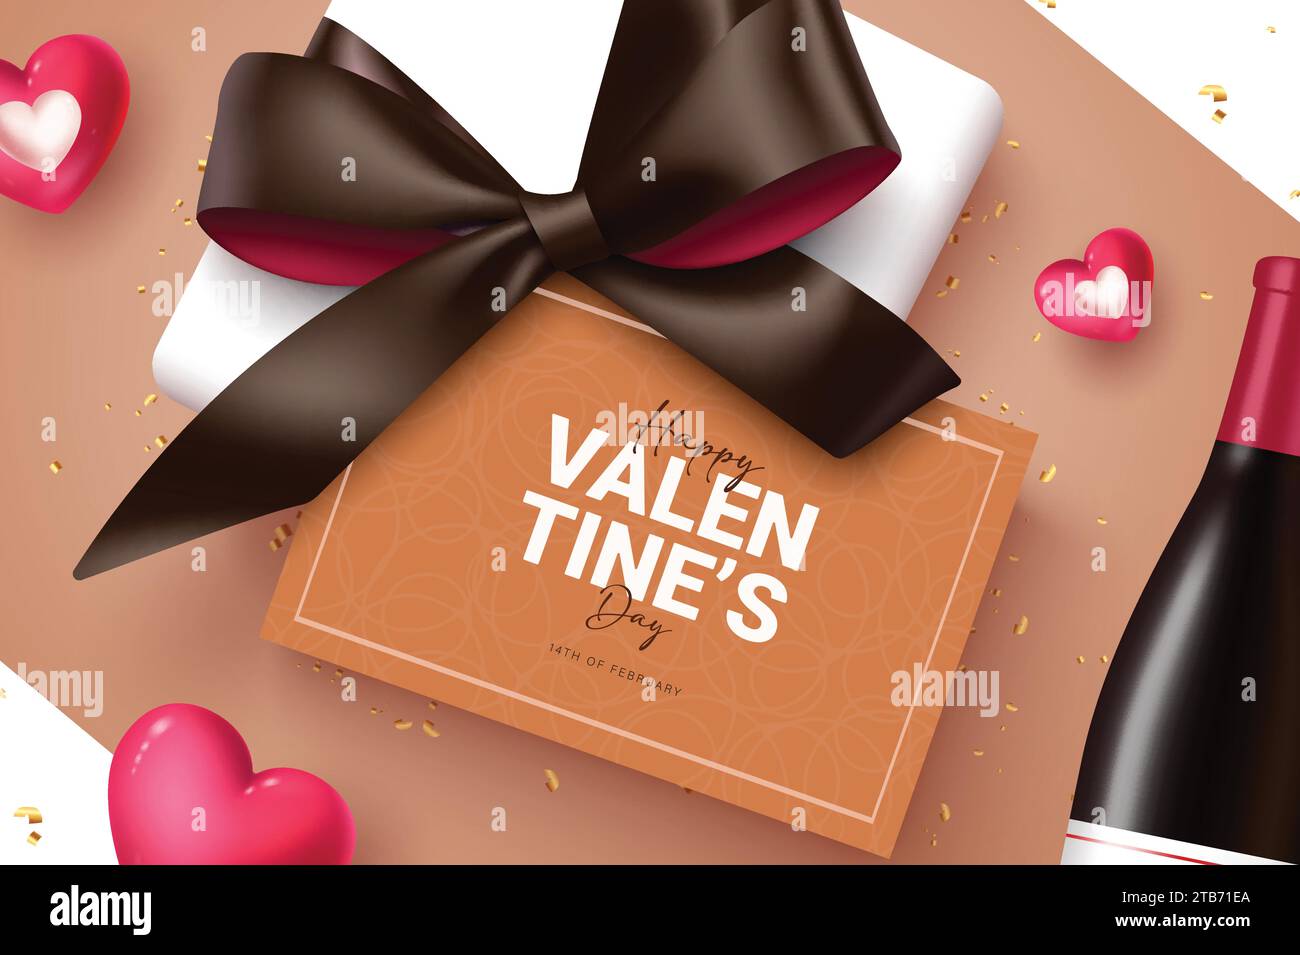 Valentinsgeschenk Grußkarte Vektor-Design. Geschenkbox zum Happy valentine's Day mit Band und Weinflasche romantisches Feiertagskonzept. Vektor Stock Vektor